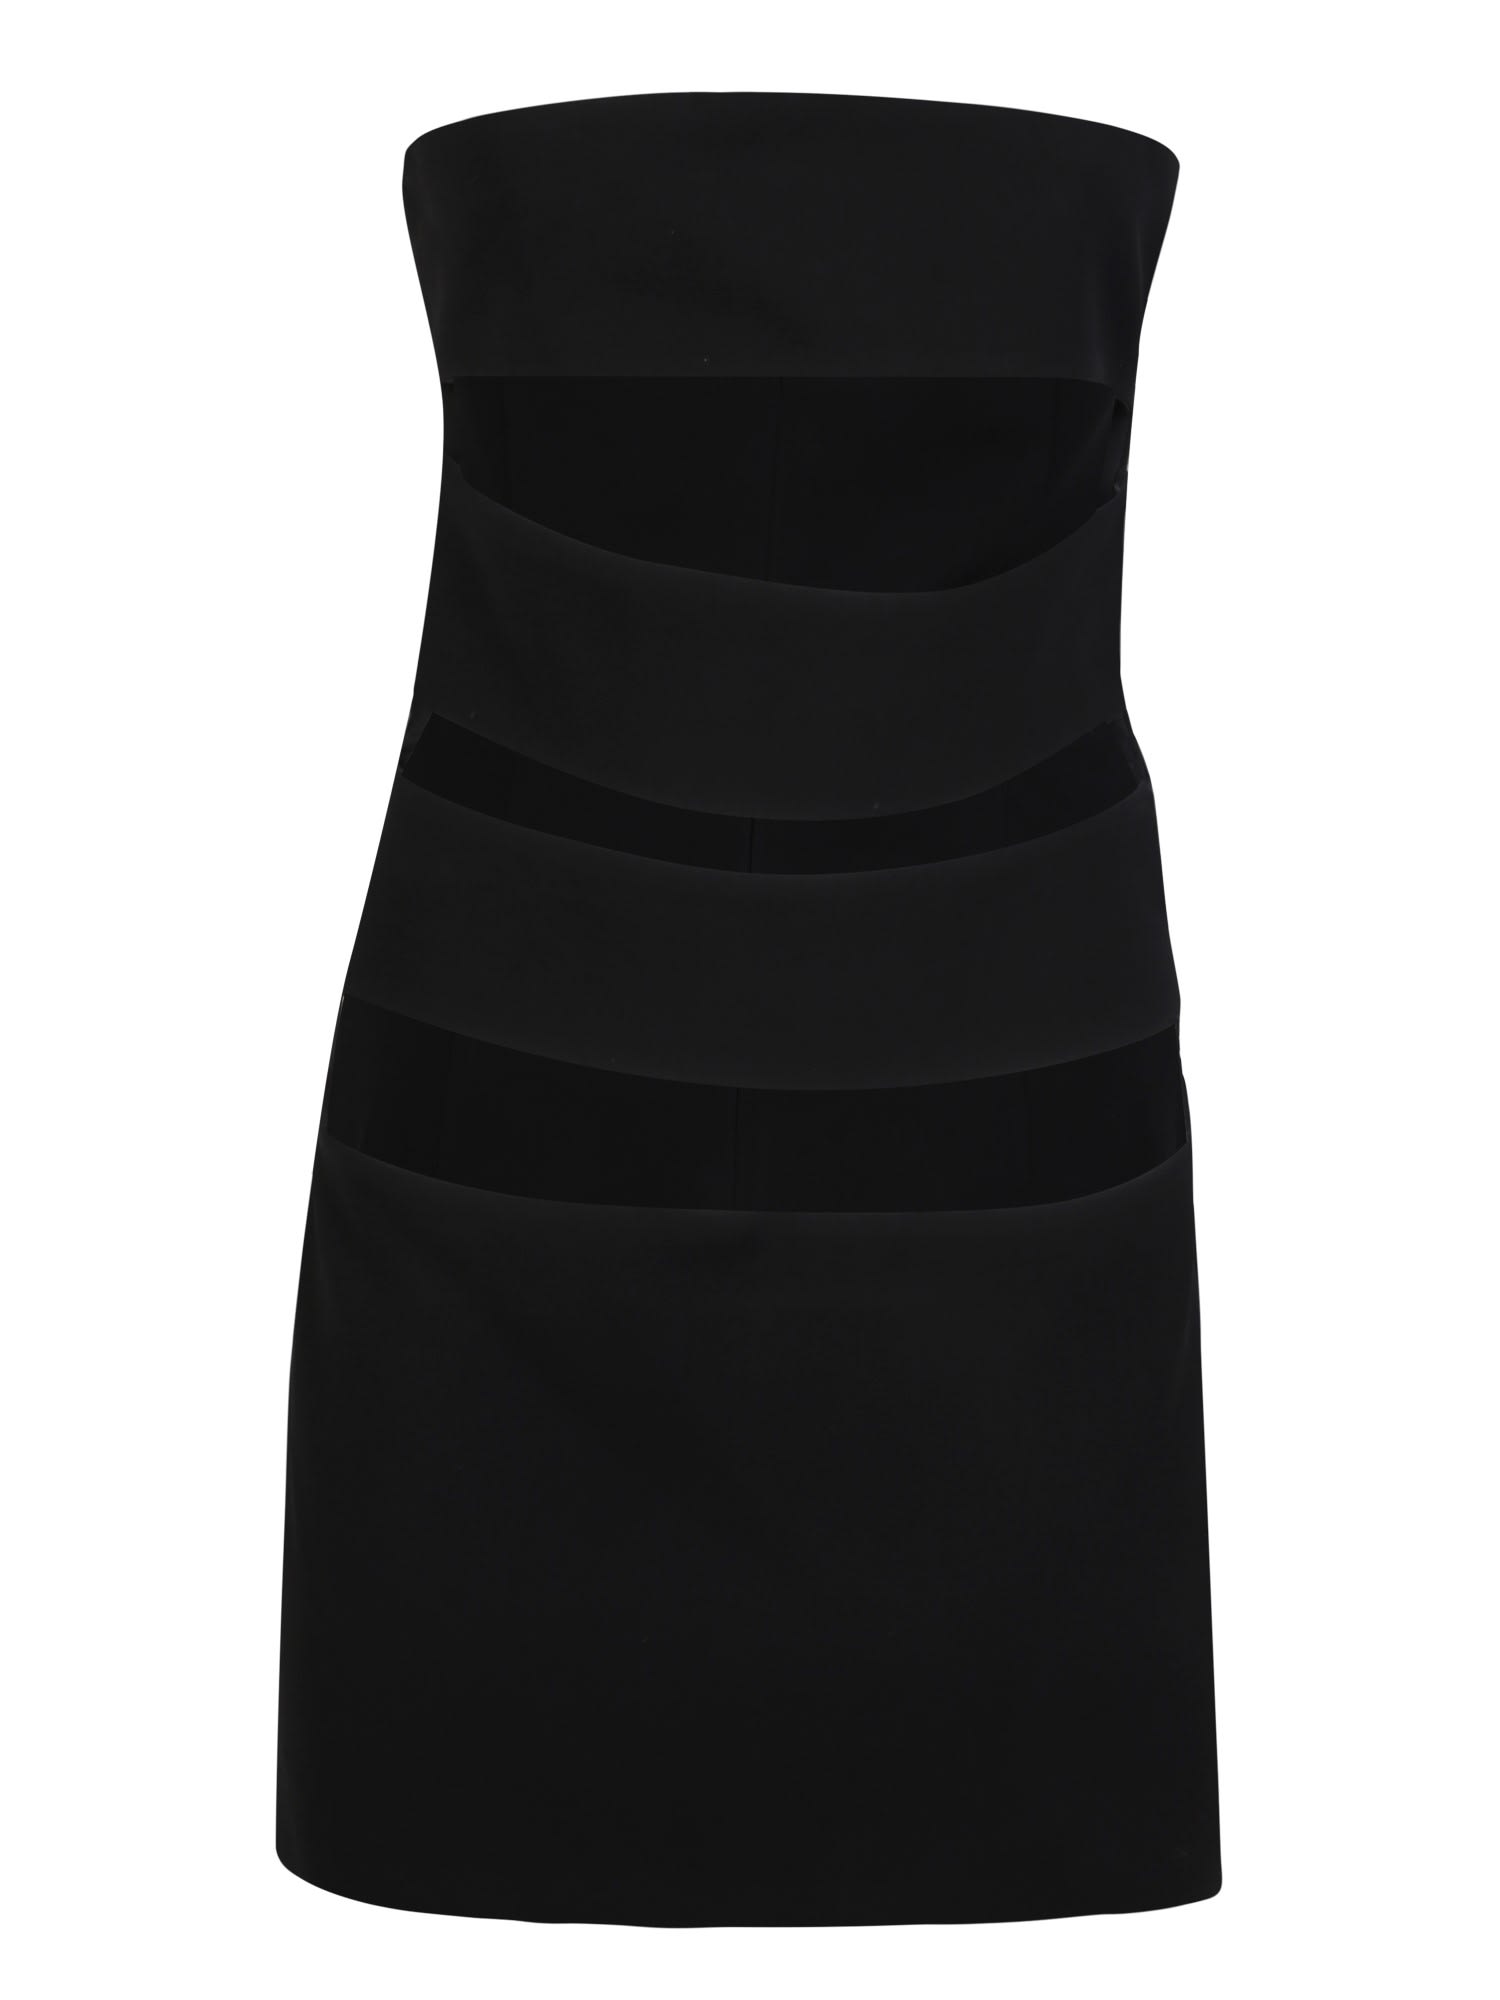 Shop Monot Short Black Dress